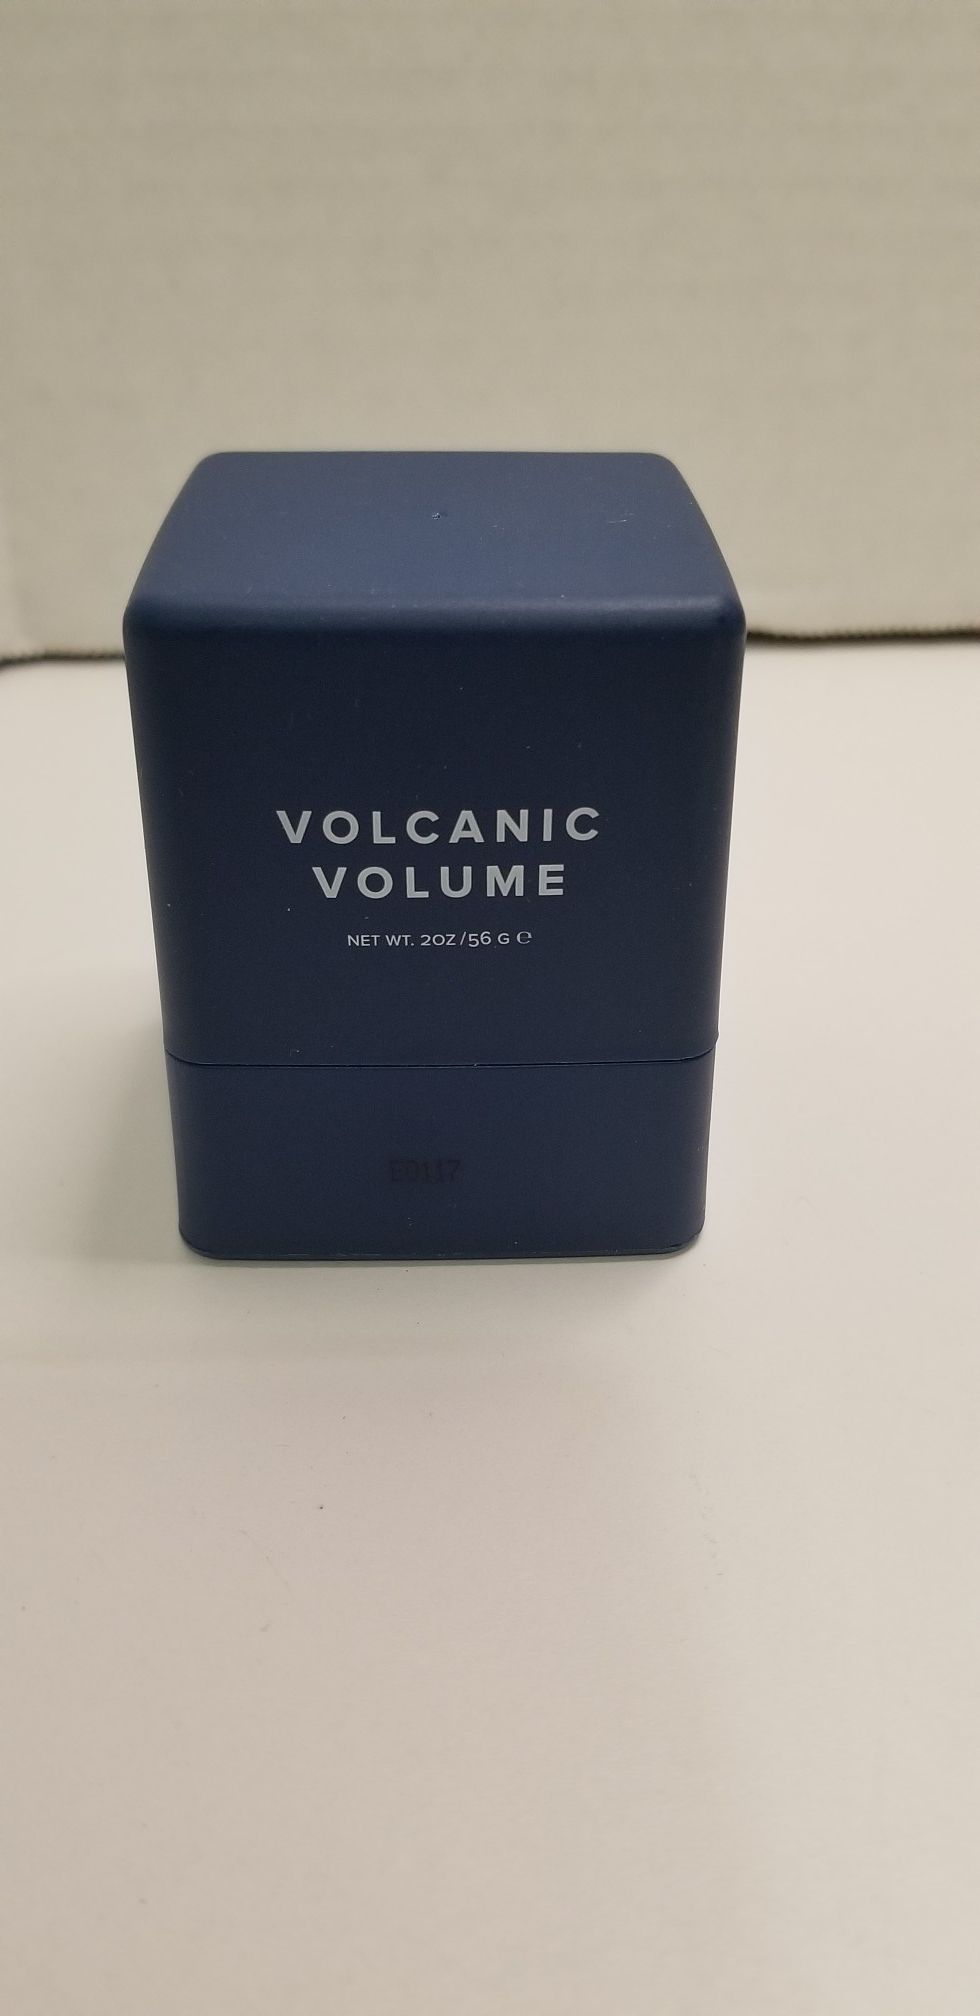 Volcanic volume